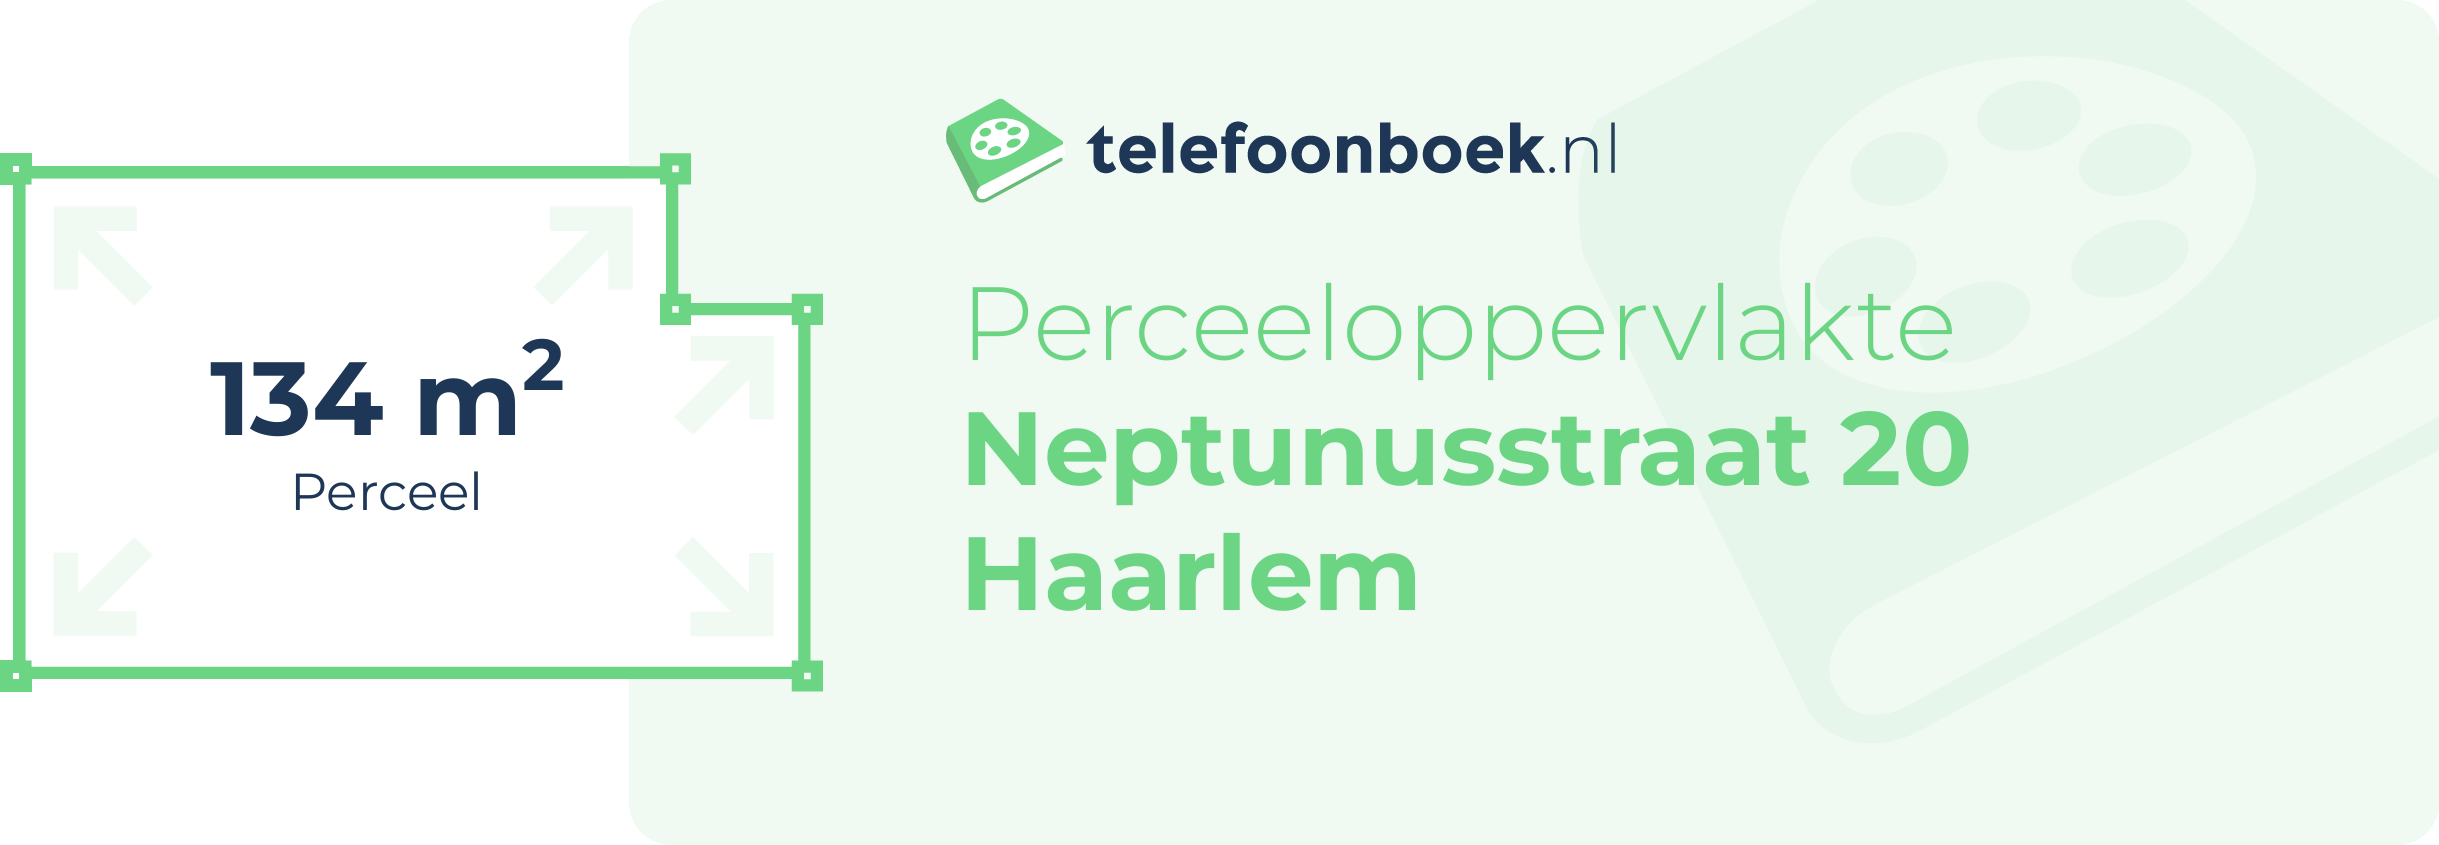 Perceeloppervlakte Neptunusstraat 20 Haarlem